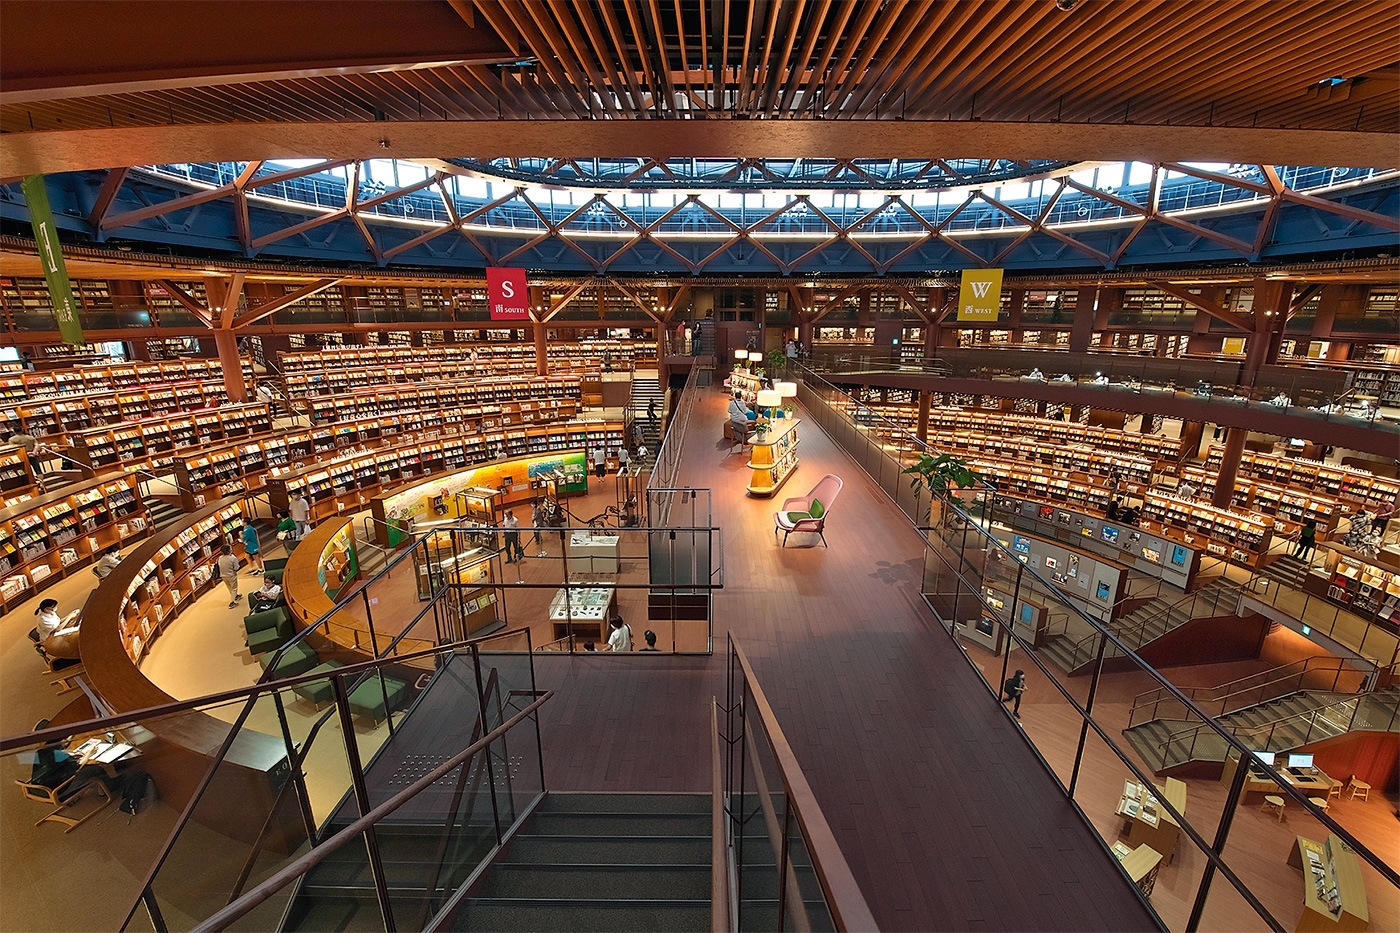 石川県立図書館の内観。段状に並ぶ書棚と閲覧席で構成した大閲覧空間が特徴。写真は2022年の雑誌掲載時のもの（写真：生田 将人）